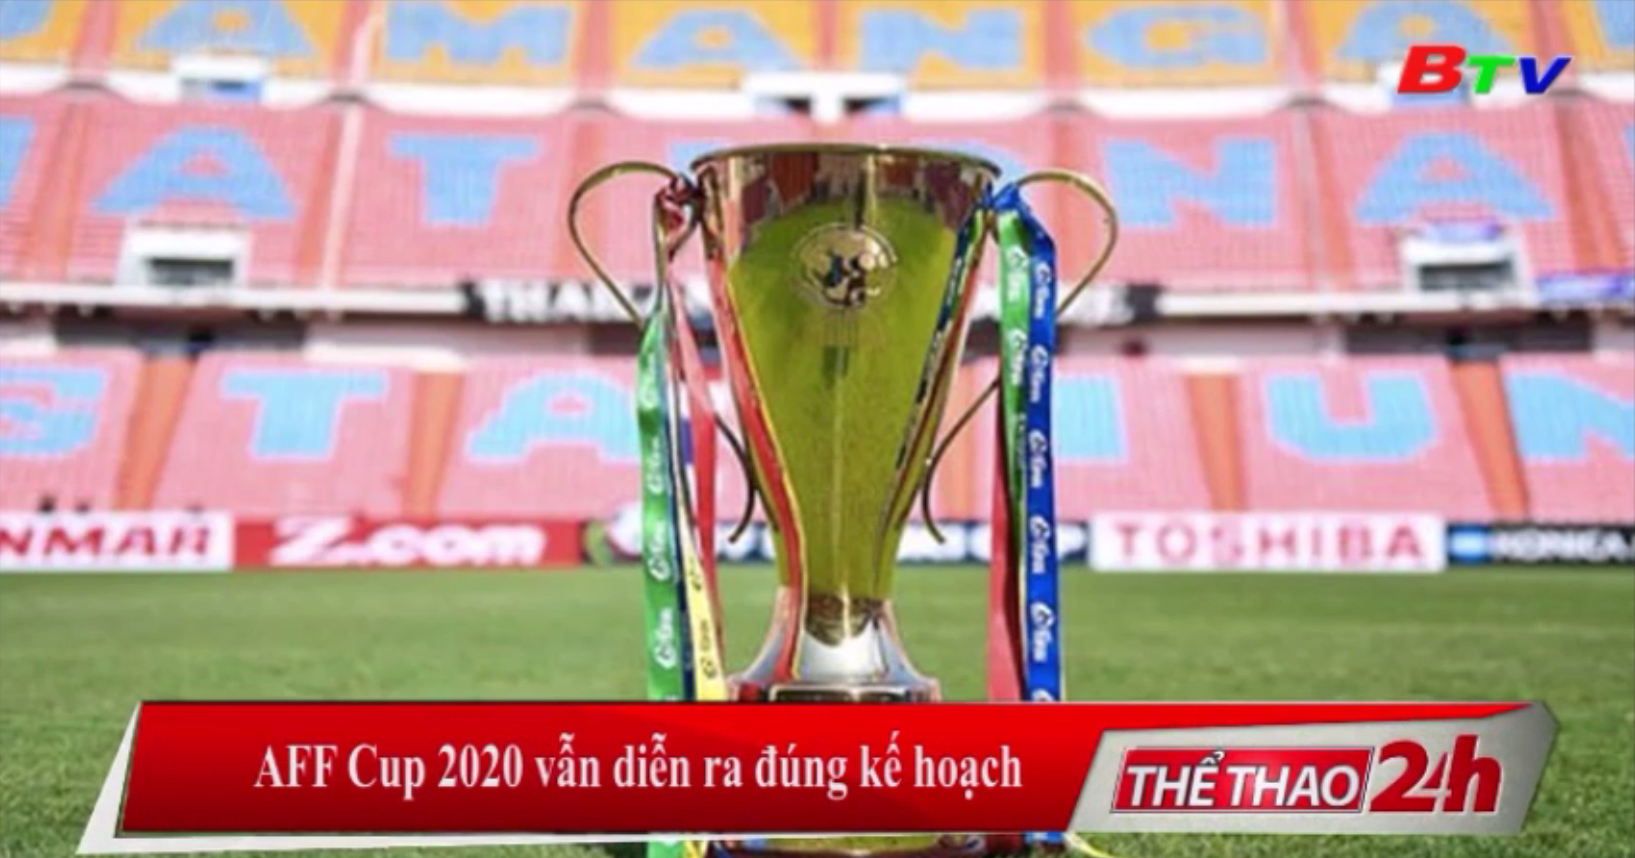 AFF Cup 2020 vẫn diễn ra đúng kế hoạch